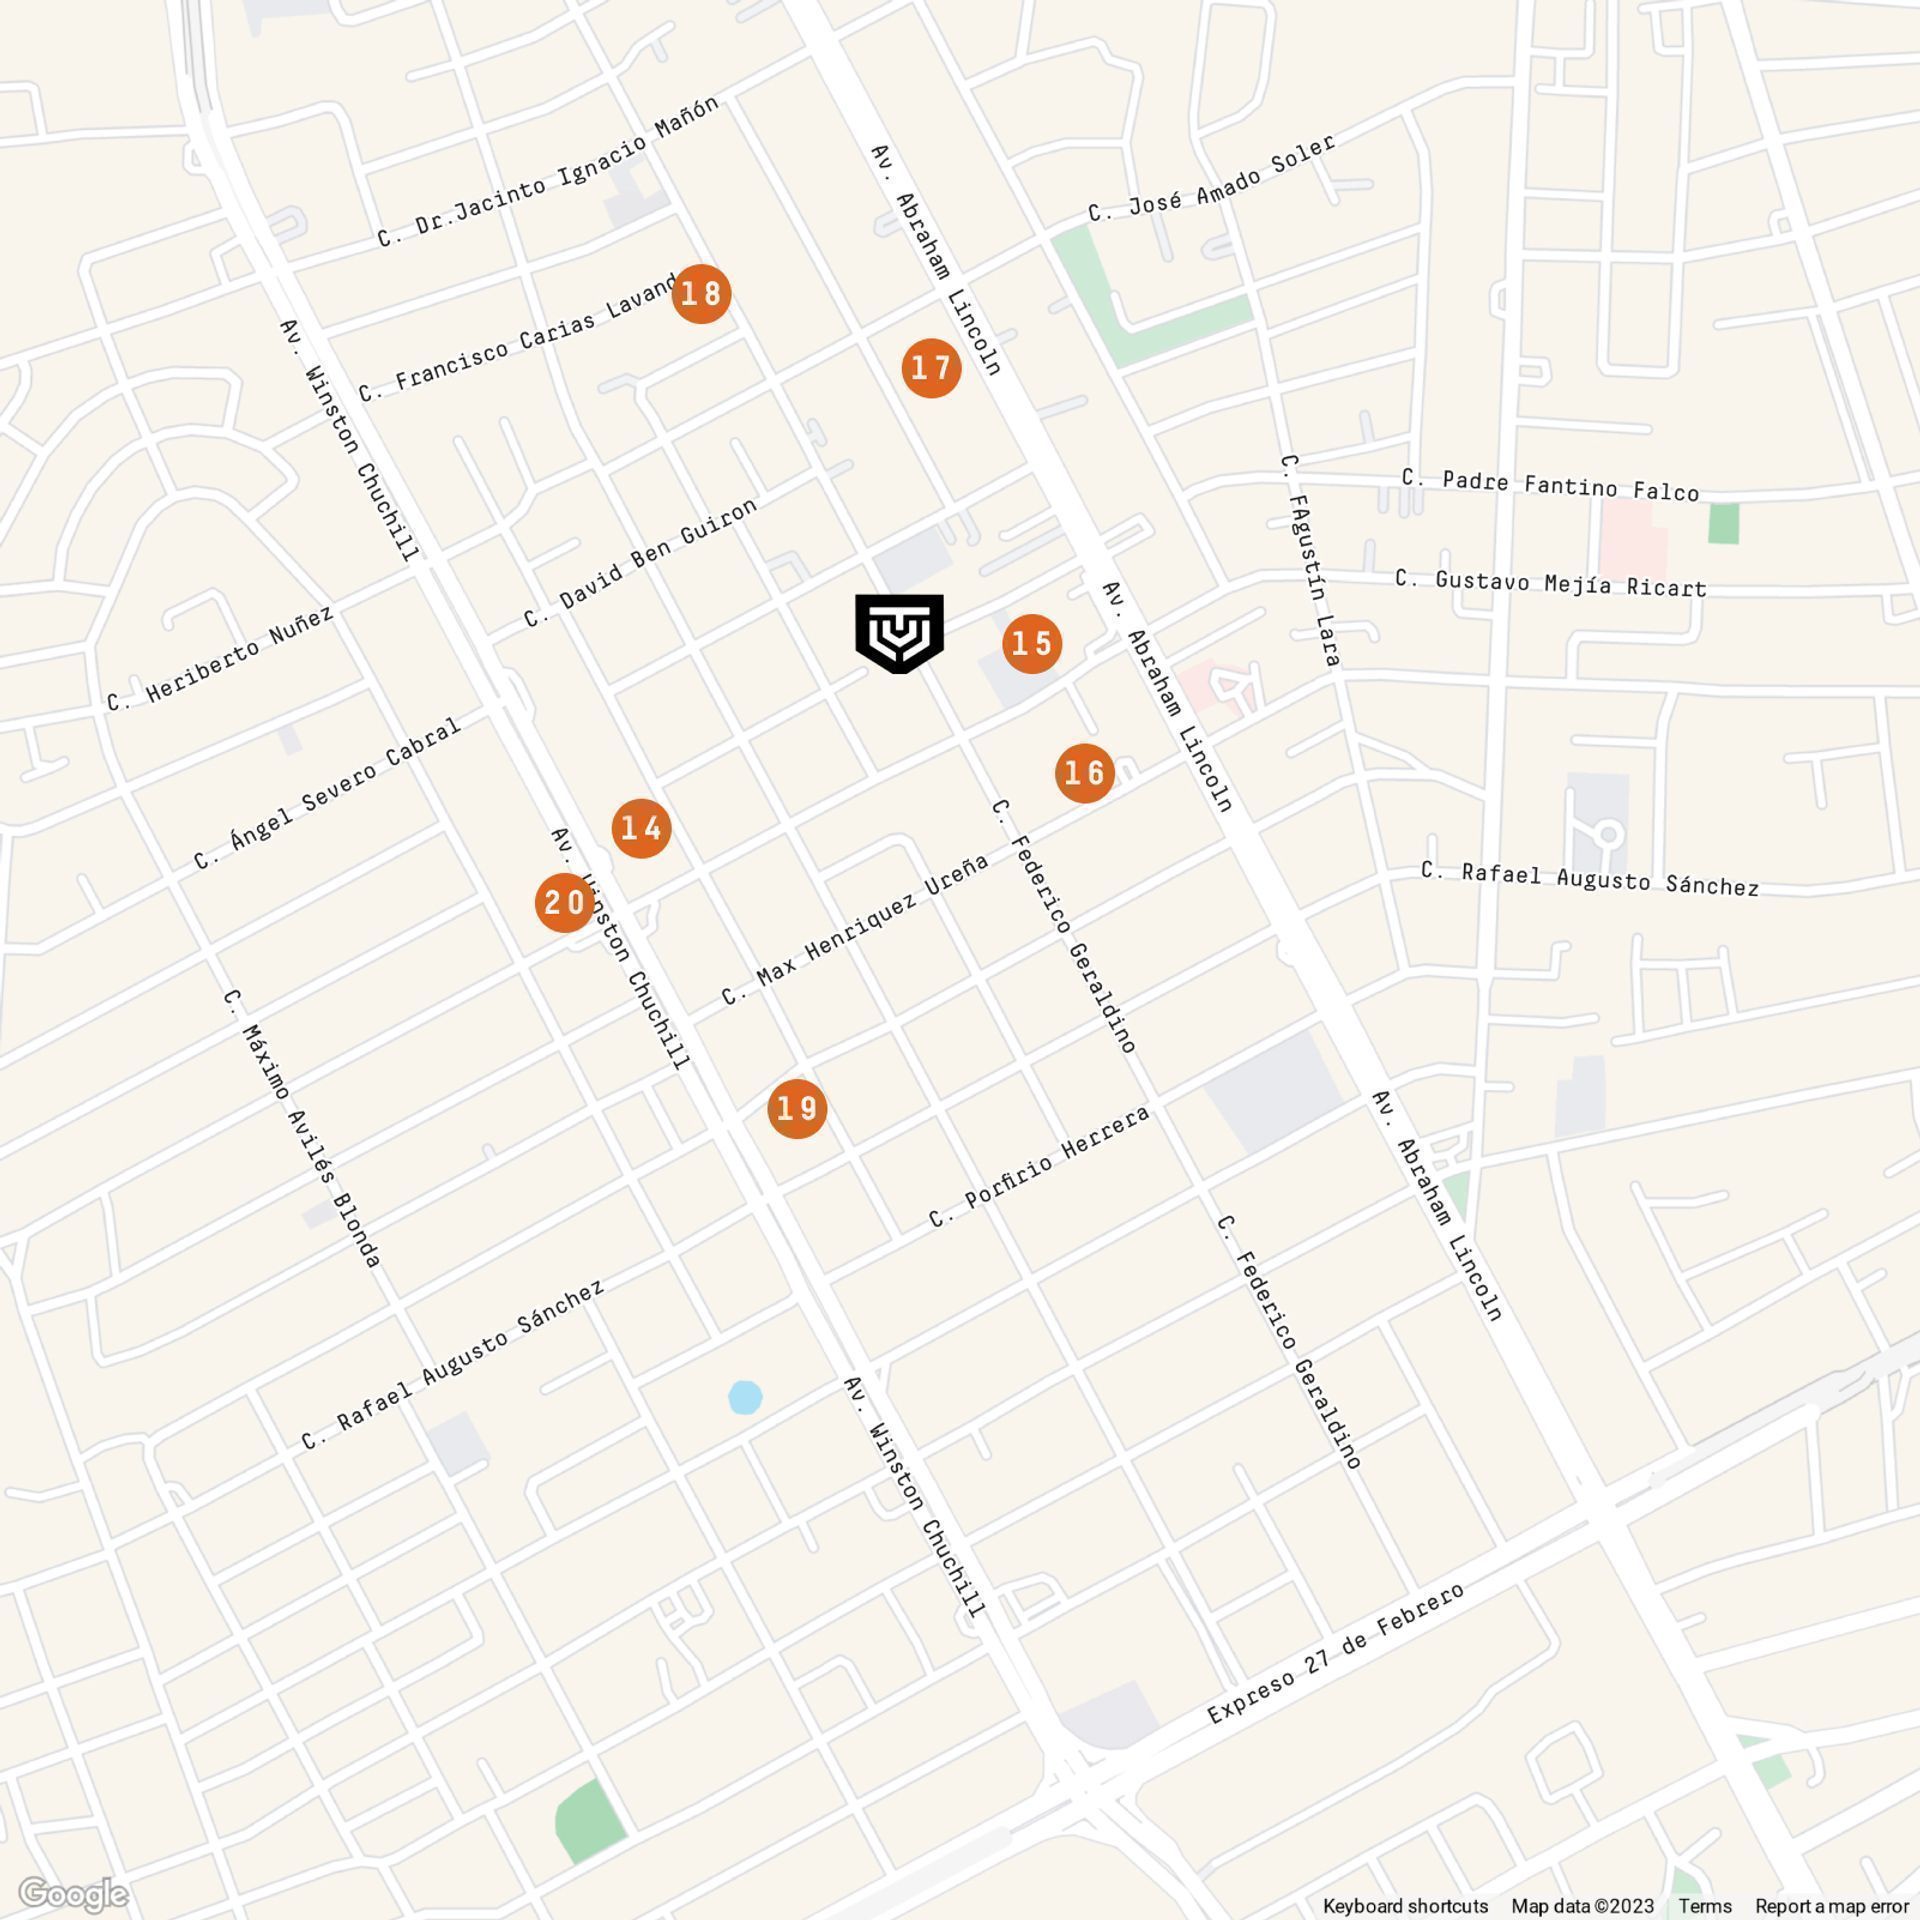 LIVIT_Apartamentos en venta en Santo Domingo_Mapa Servicios y comercio